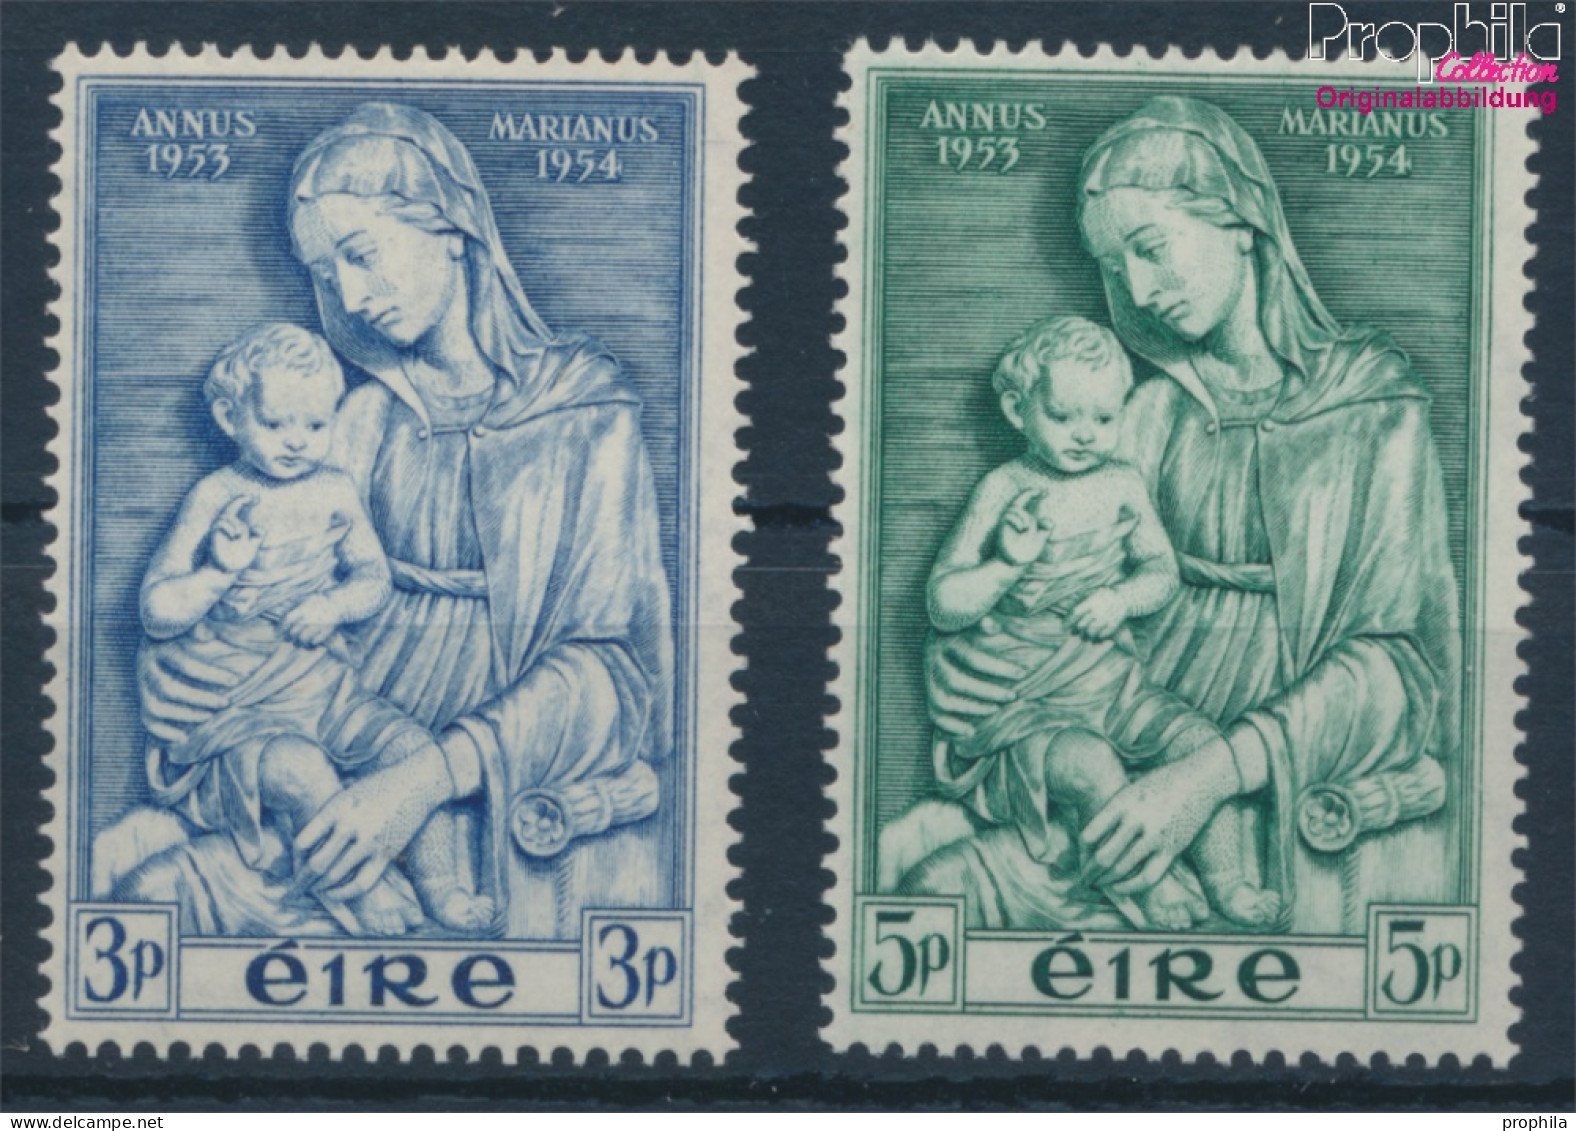 Irland 120-121 (kompl.Ausg.) Postfrisch 1954 Marianisches Jahr (10398343 - Neufs